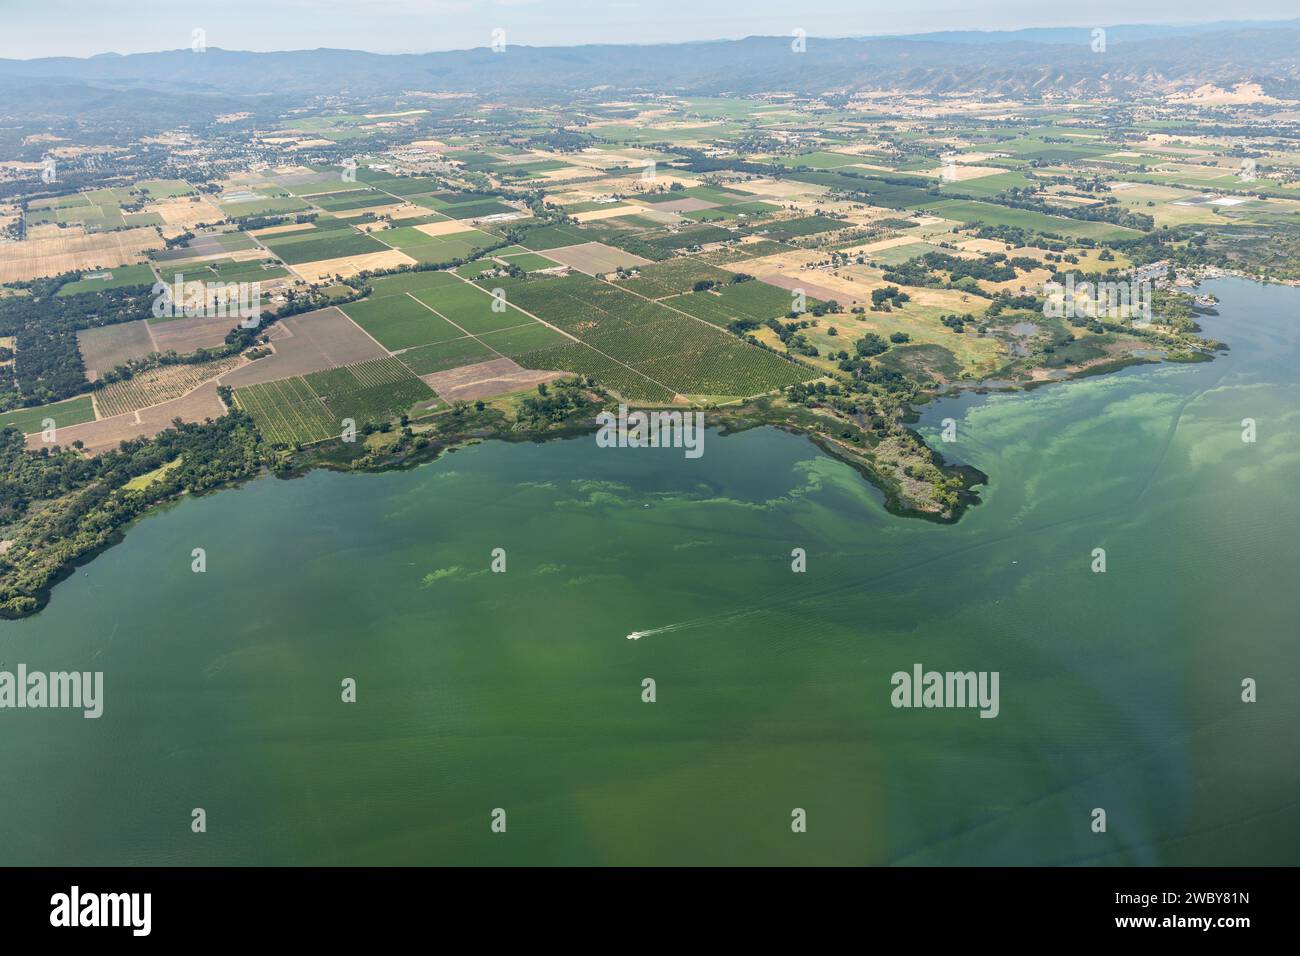 Vue aérienne des eaux vertes polluées du lac Clear et des effets environnementaux du ruissellement agricole causant la prolifération d'algues Banque D'Images